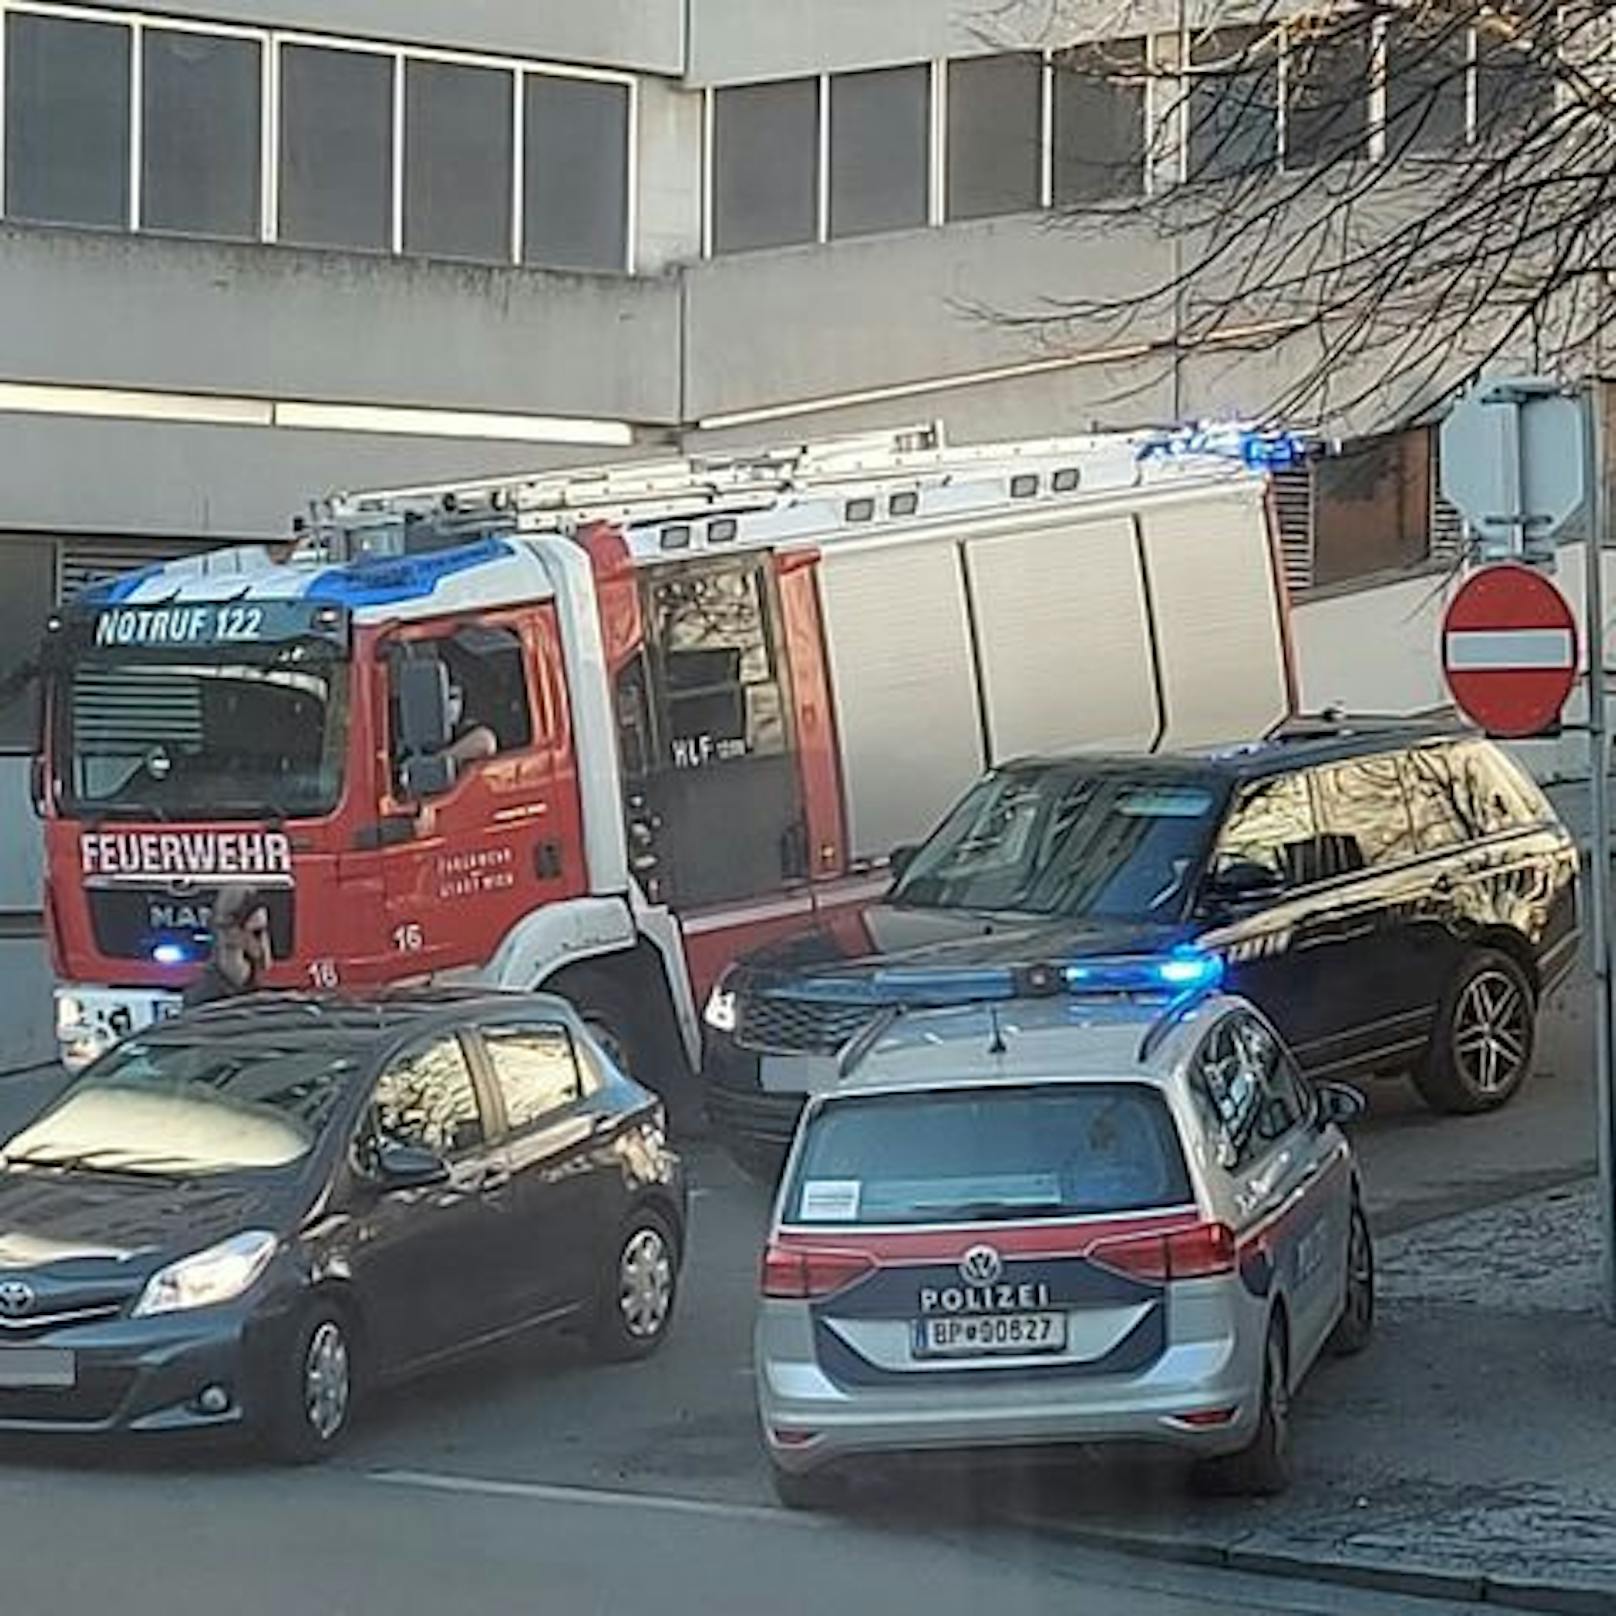 Feuerwehr-Einsatz auf der Heiligenstädter Straße (Wien-Döbling)